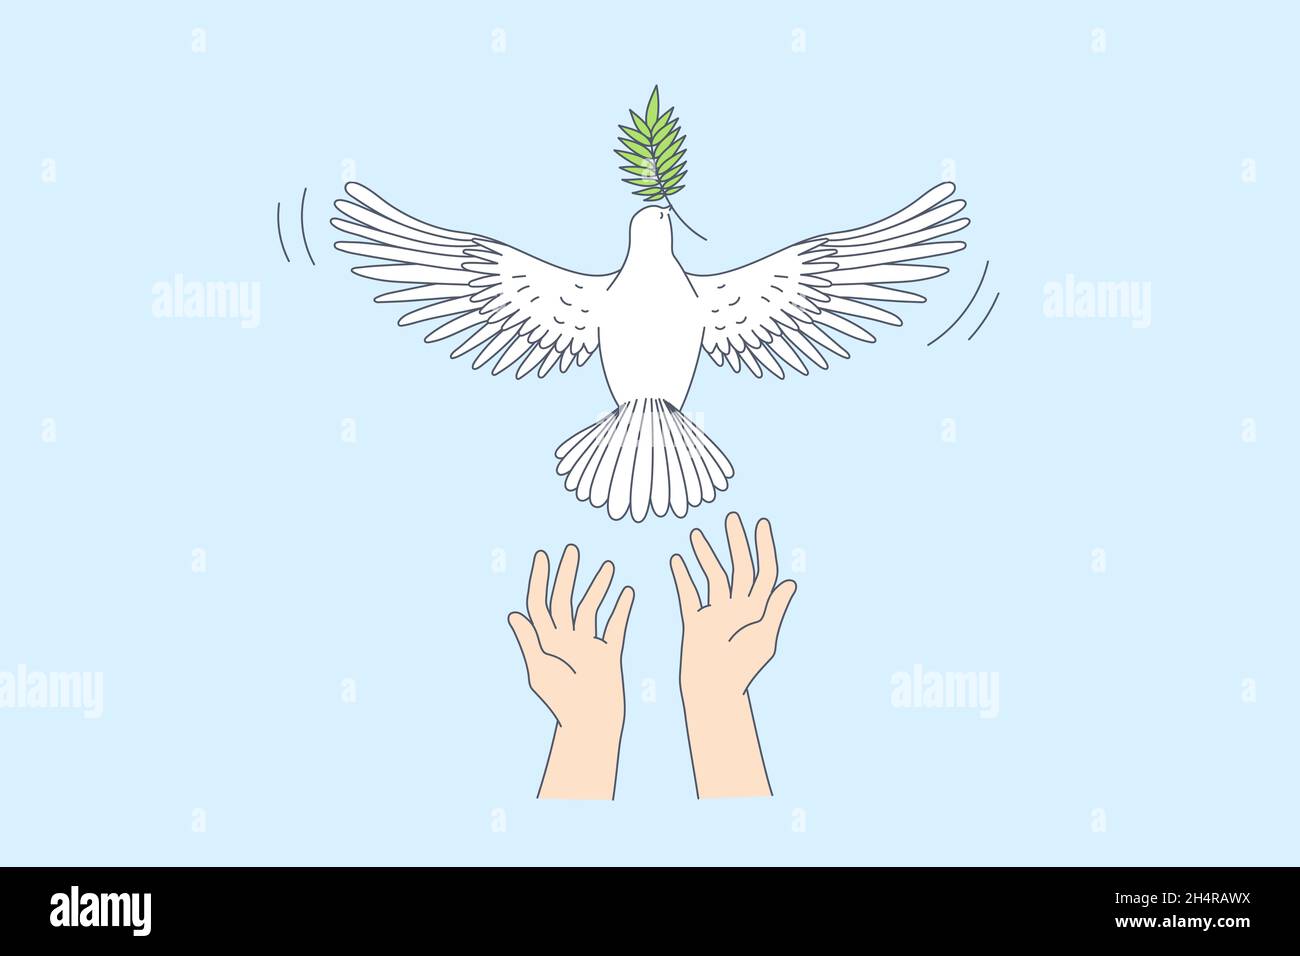 Freiheit und Freigabe guter Nachrichten Konzept. Menschliche Hände lassen weiße Taube mit grünem Blatt im Schnabel über blauen Himmel Hintergrund Vektorgrafik gehen Stock Vektor